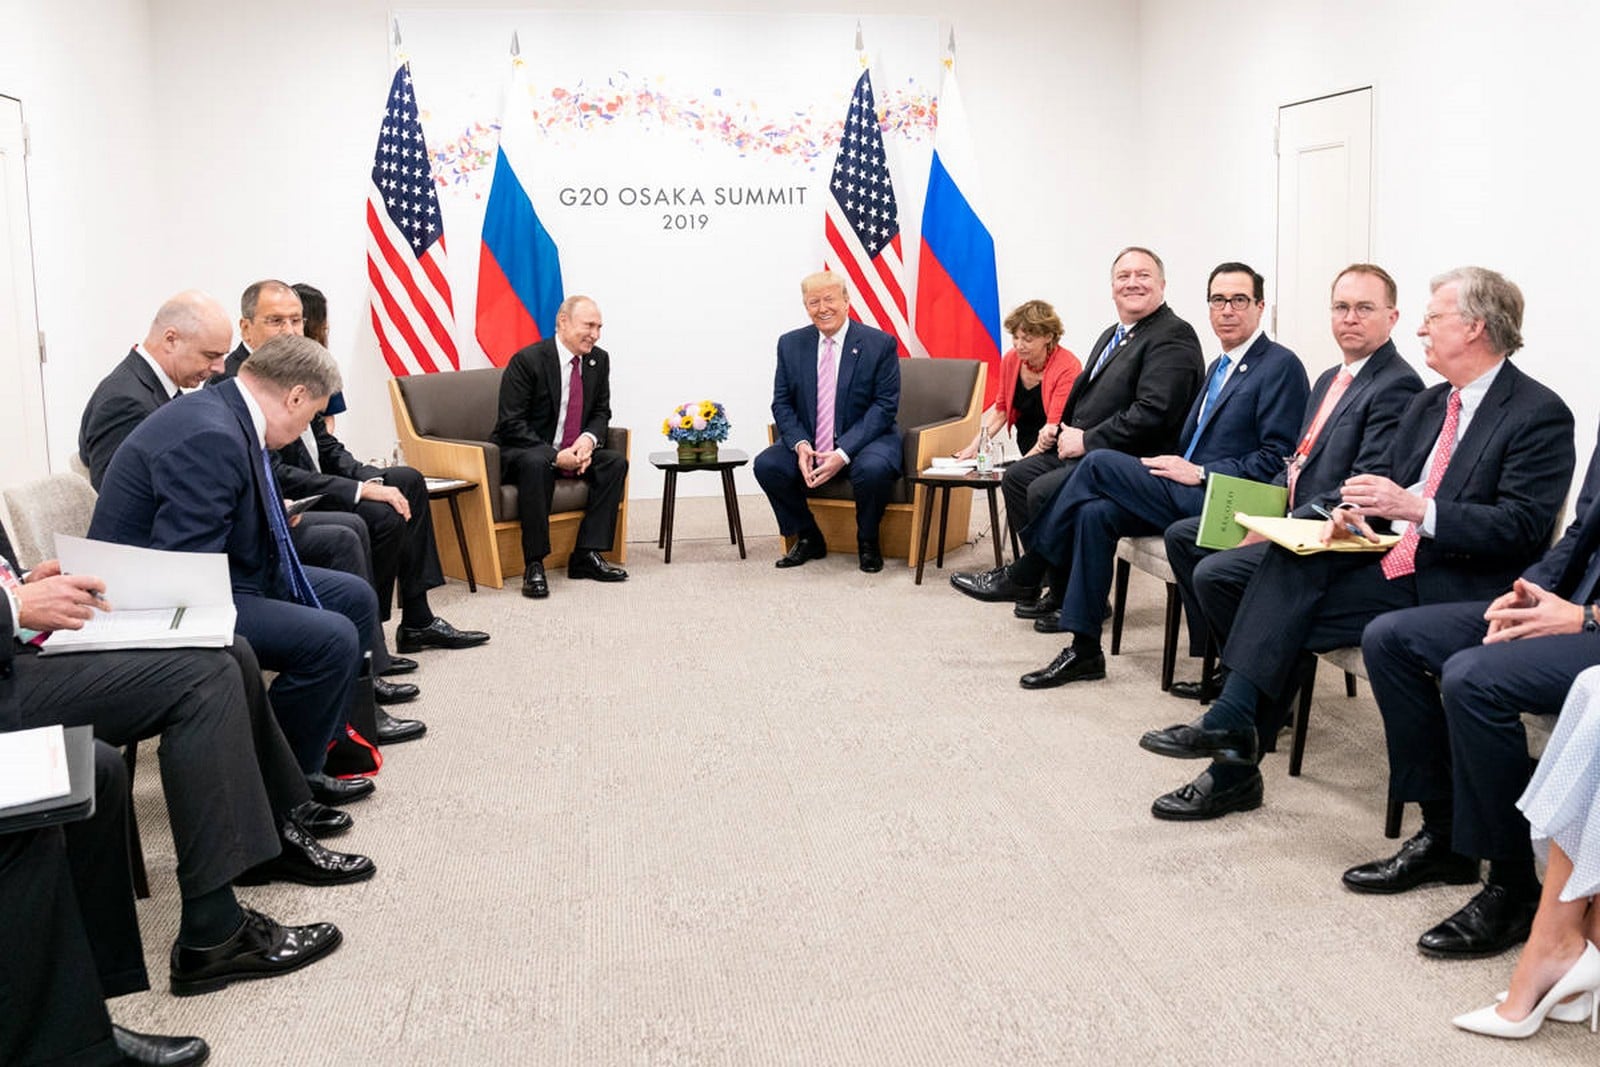 Les administrations russes et américaines lors du G20 d'Osaka, au Japon, le 28 juin 2019,
Auteurs  : The White House/Sipa USA/SIPA,
Numéro de reportage  : SIPAUSA30174492_000134.